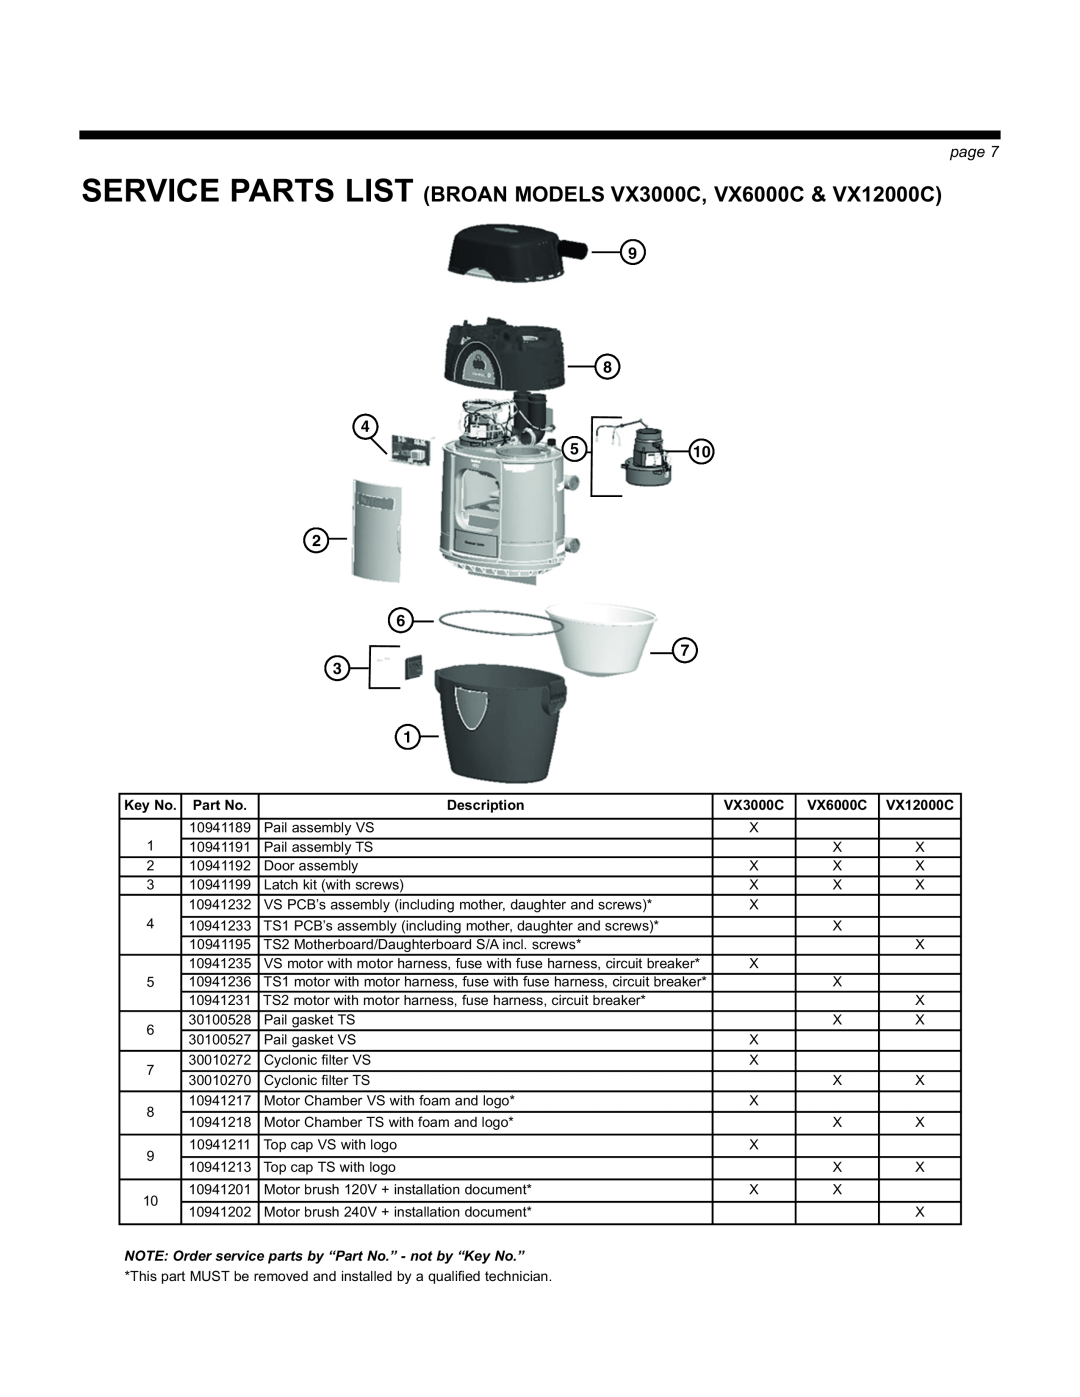 Broan manual SERVICE PARTS LIST BROAN MODELS VX3000C, VX6000C & VX12000C, page, Description 